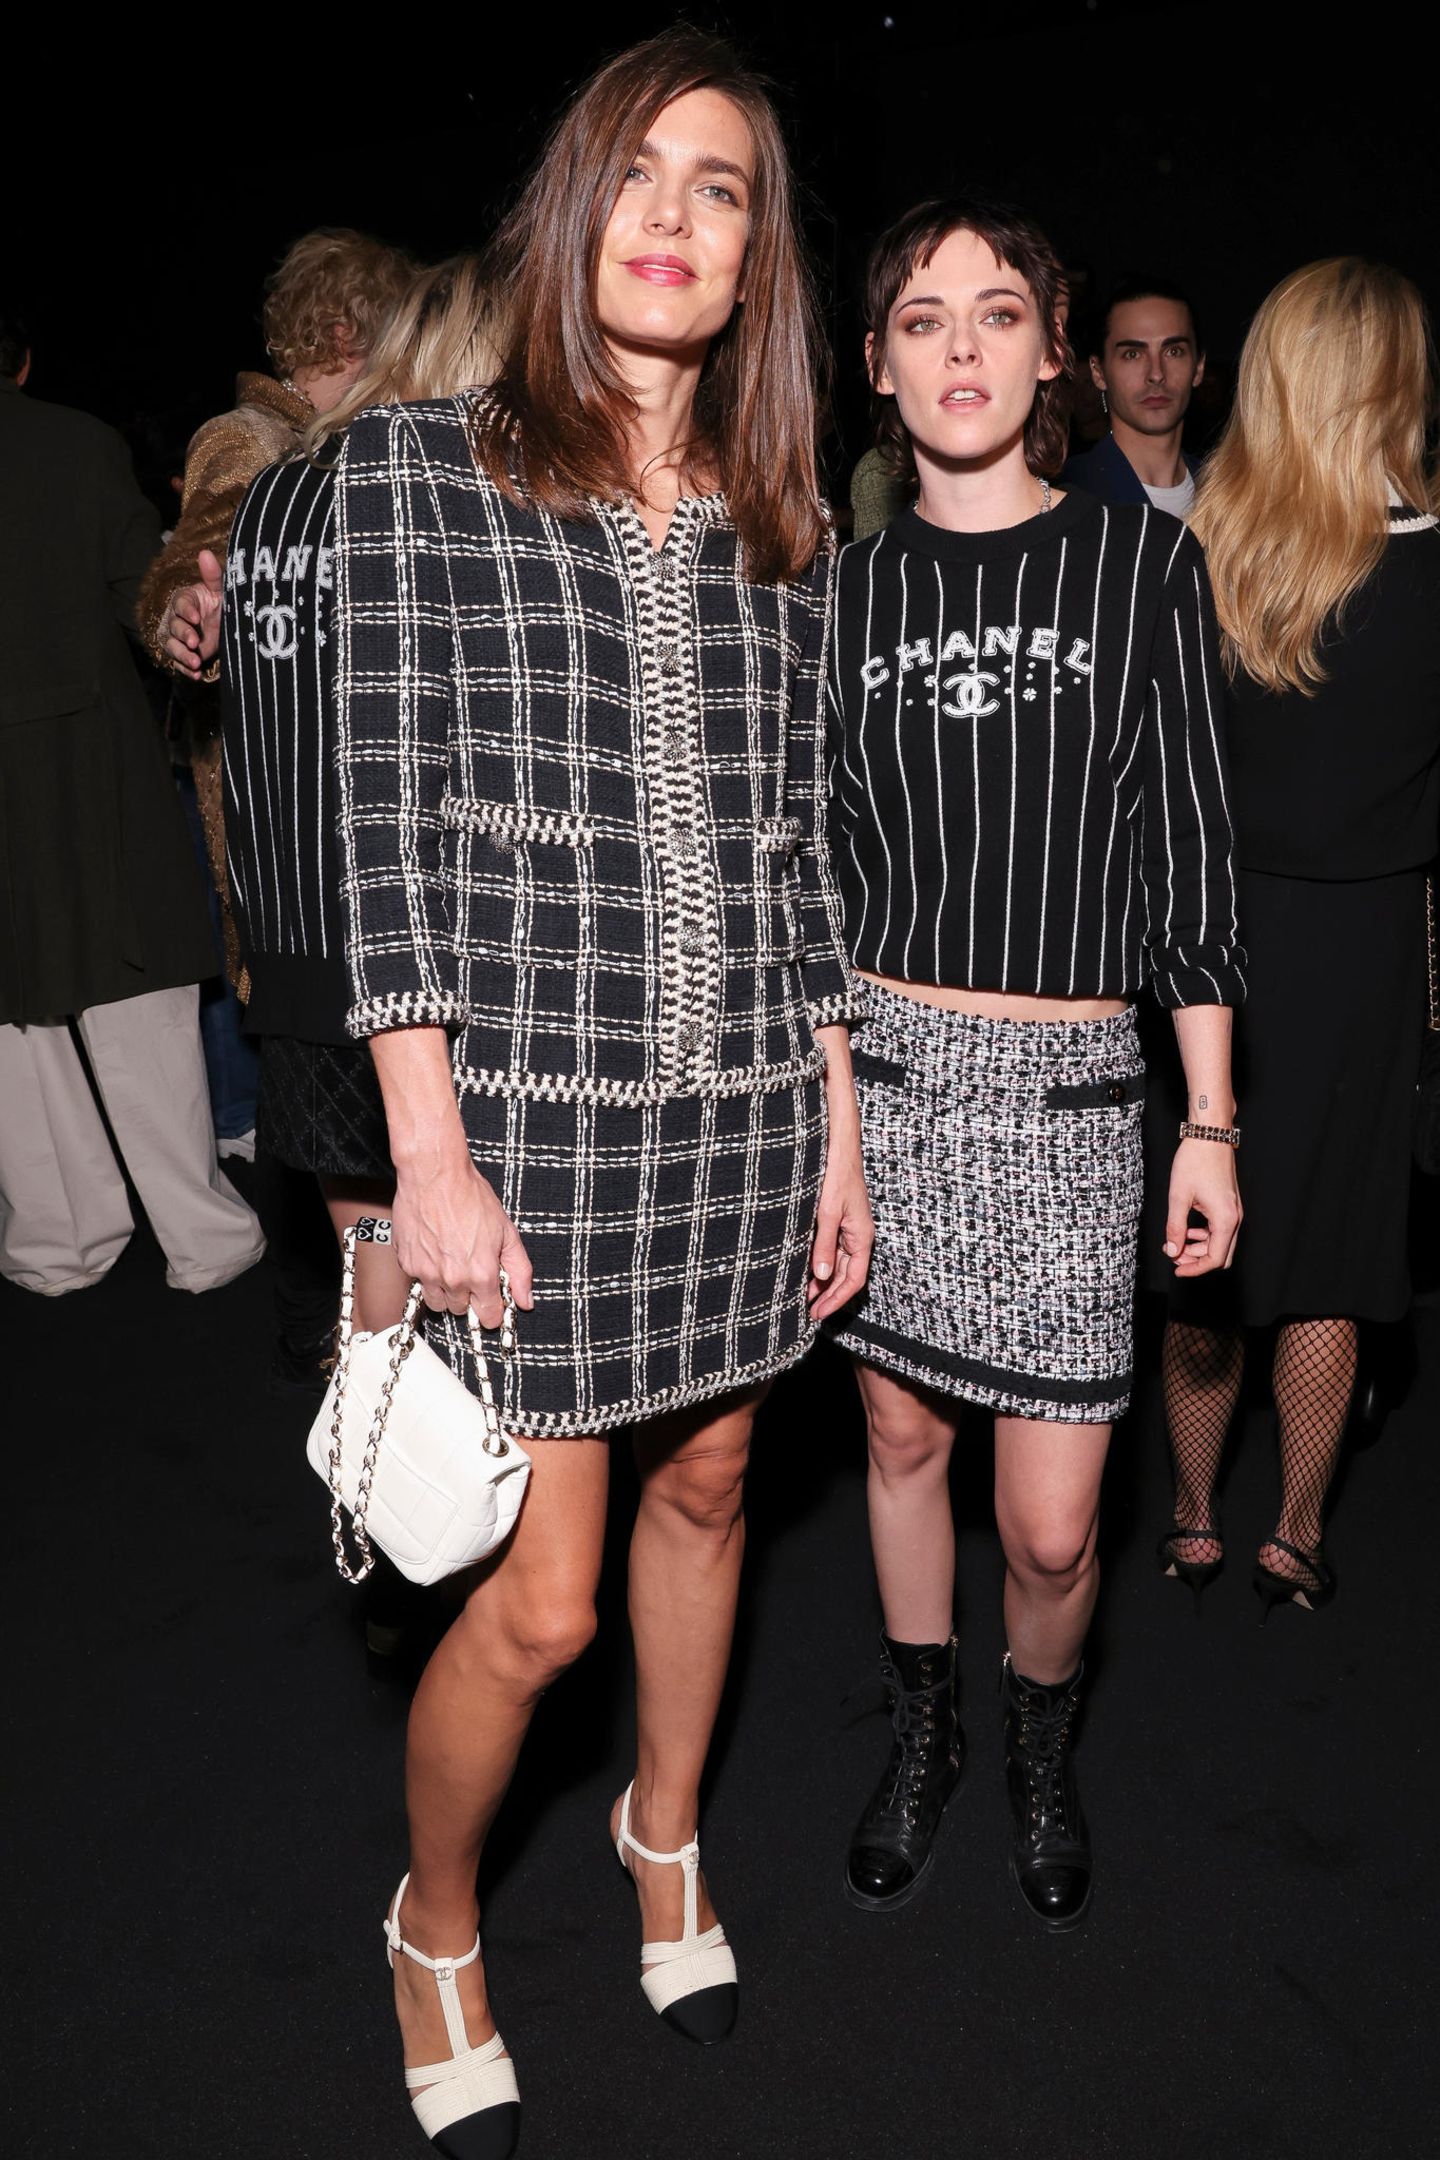 Als Musen und Markenbotschafterinnen von Chanel dürfen Charlotte Casirghi und Kristen Stewart natürlich nicht fehlen.